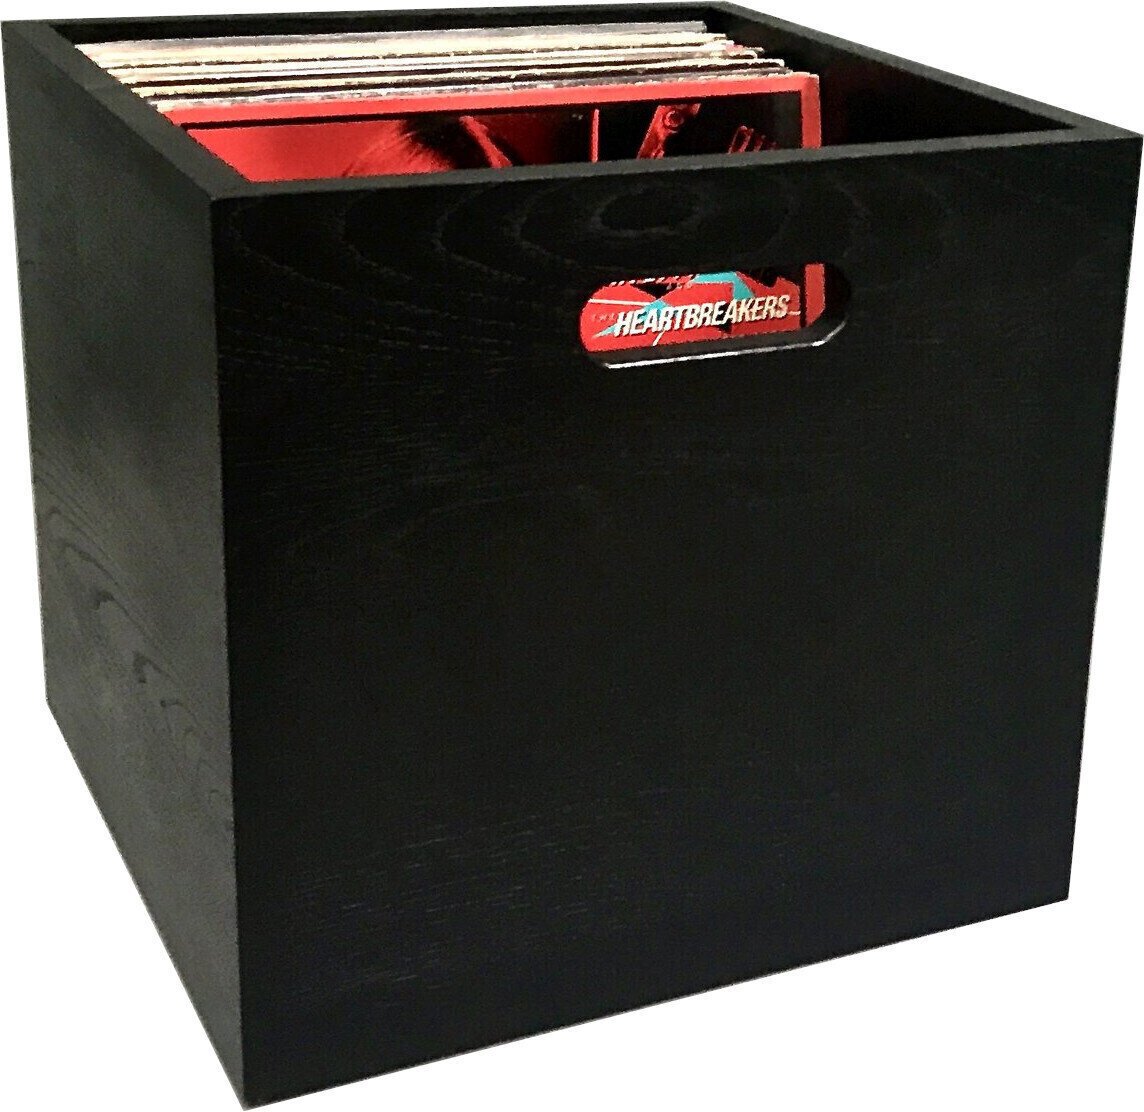 Boîte pour disques LP Music Box Designs "Black Magic" India Ink Colored Oak 12 inch Vinyl Storage Box La boîte Boîte pour disques LP